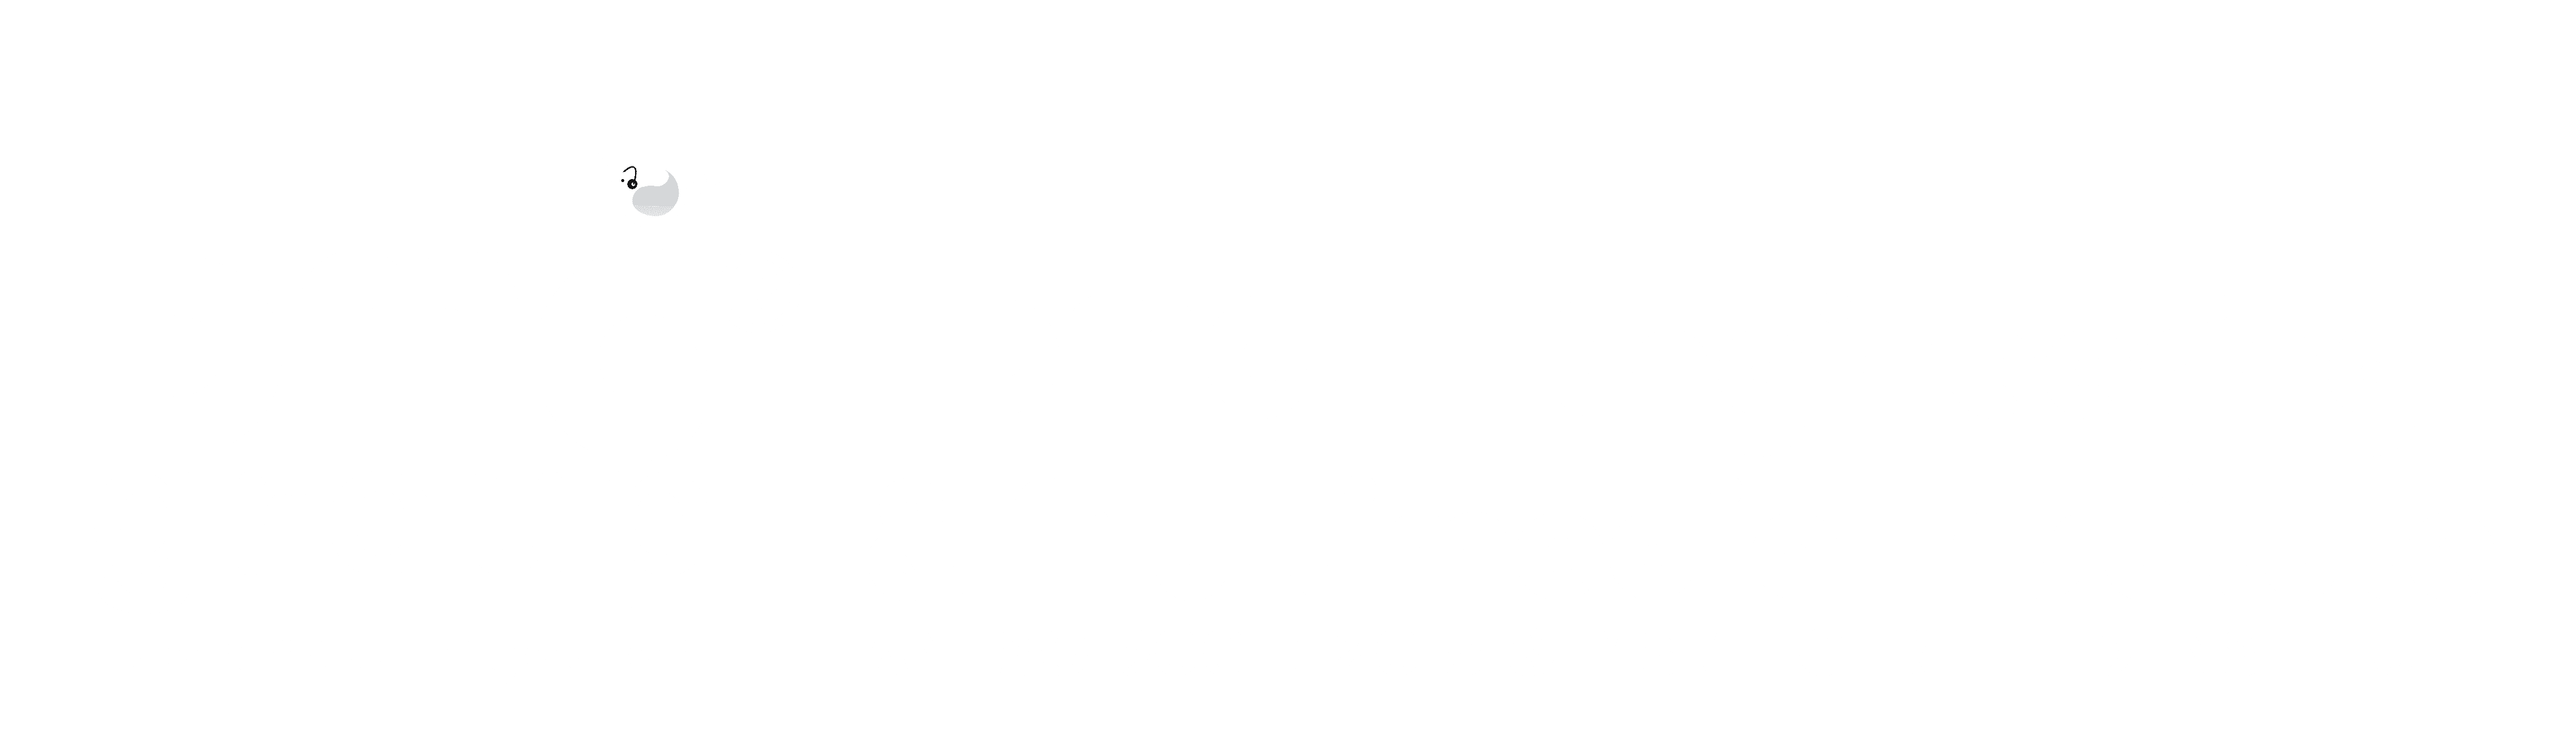 DMG IT Engineering & Multimedia Institute